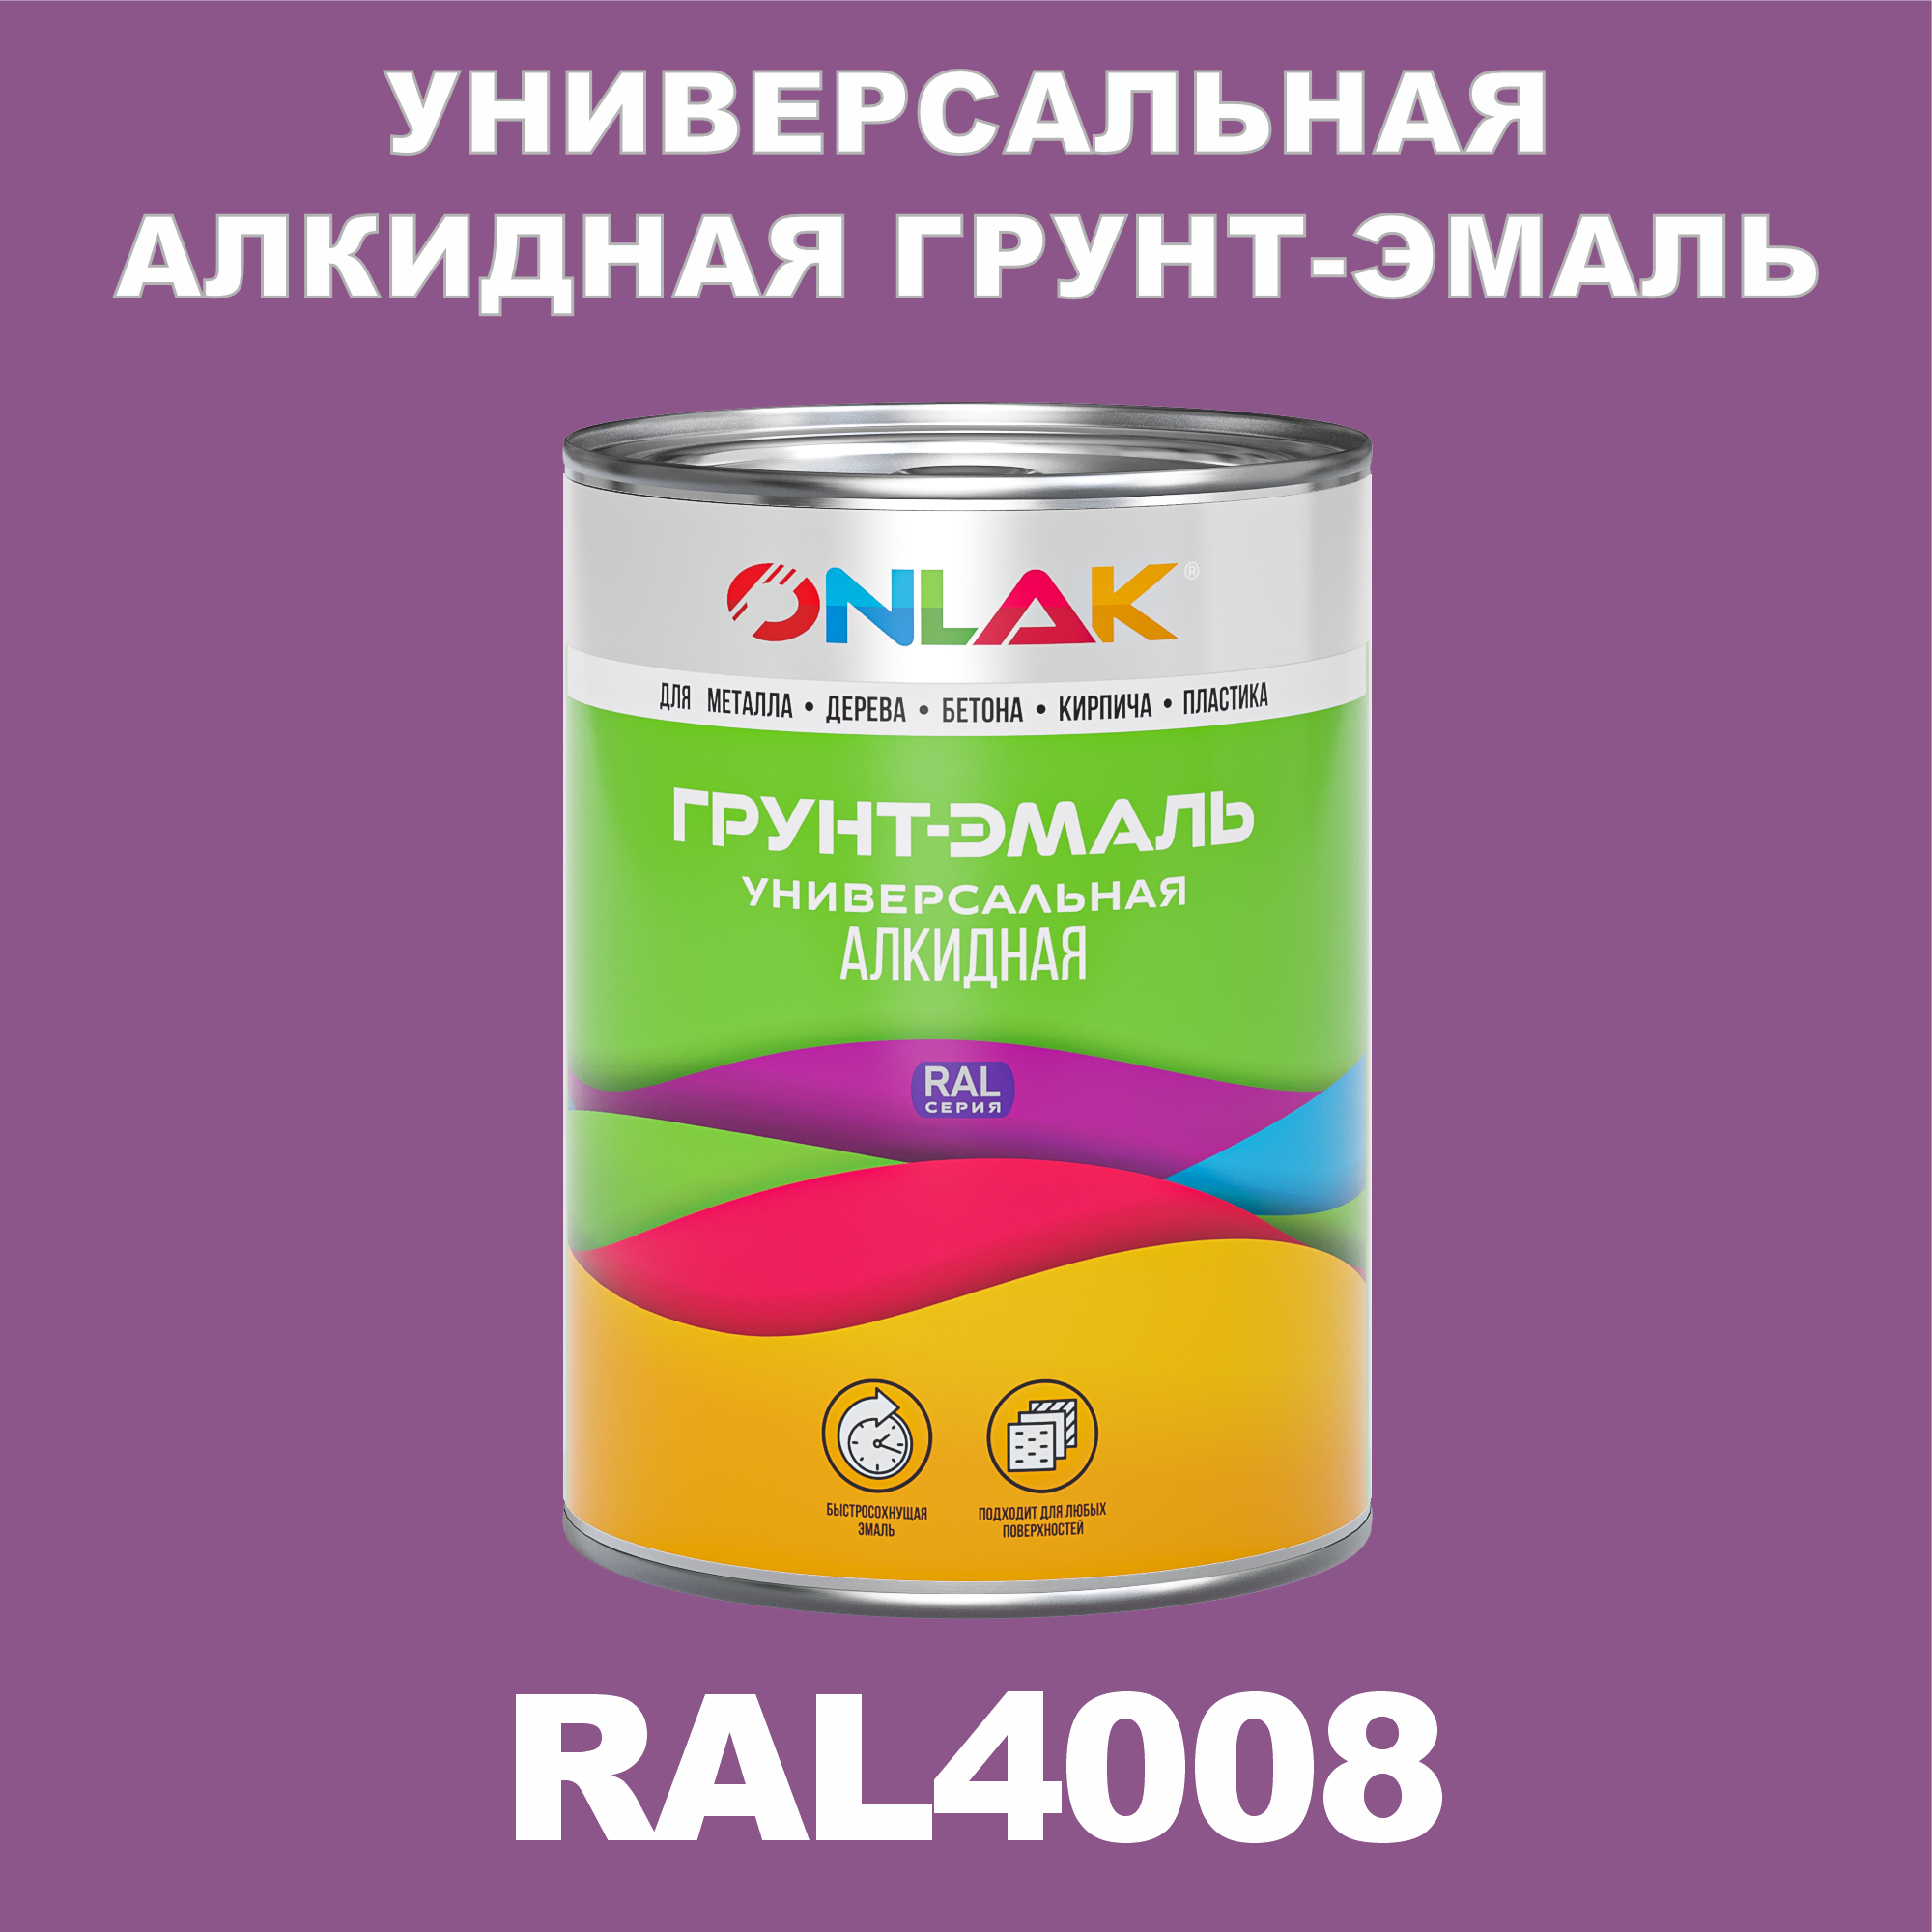 Грунт-эмаль ONLAK 1К RAL4008 антикоррозионная алкидная по металлу по ржавчине 1 кг антикоррозионная грунт эмаль onlak ral 4003 фиолетовый 542 мл